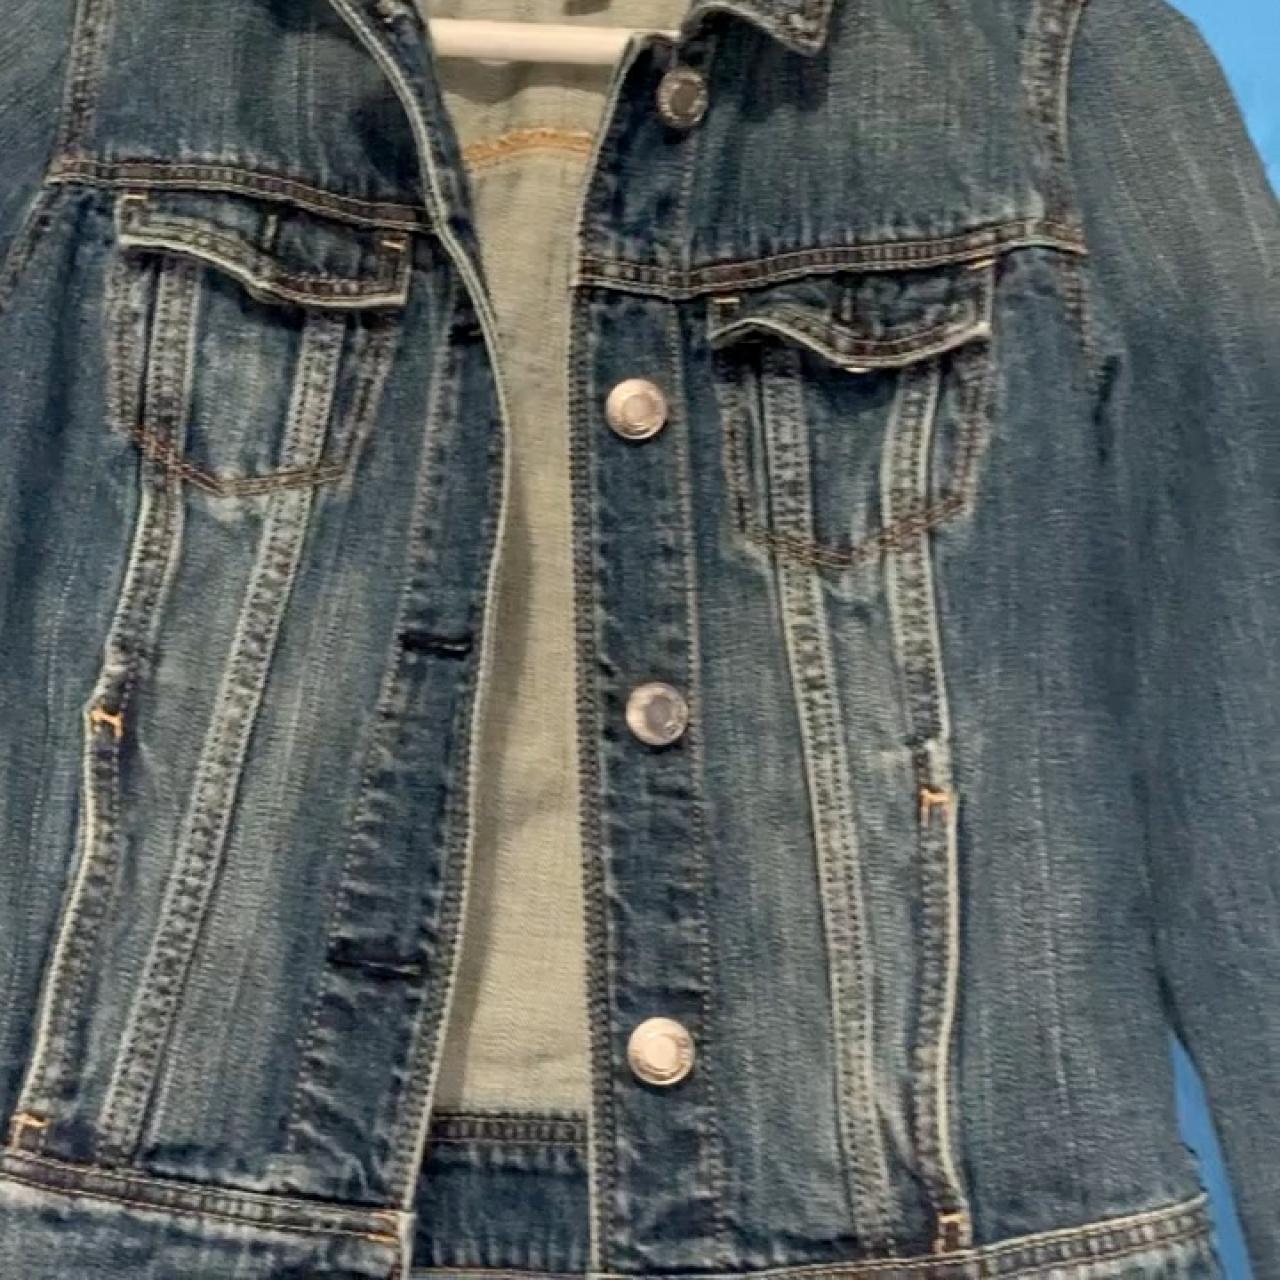 American eagle jean jacket size XS worn once... - Depop